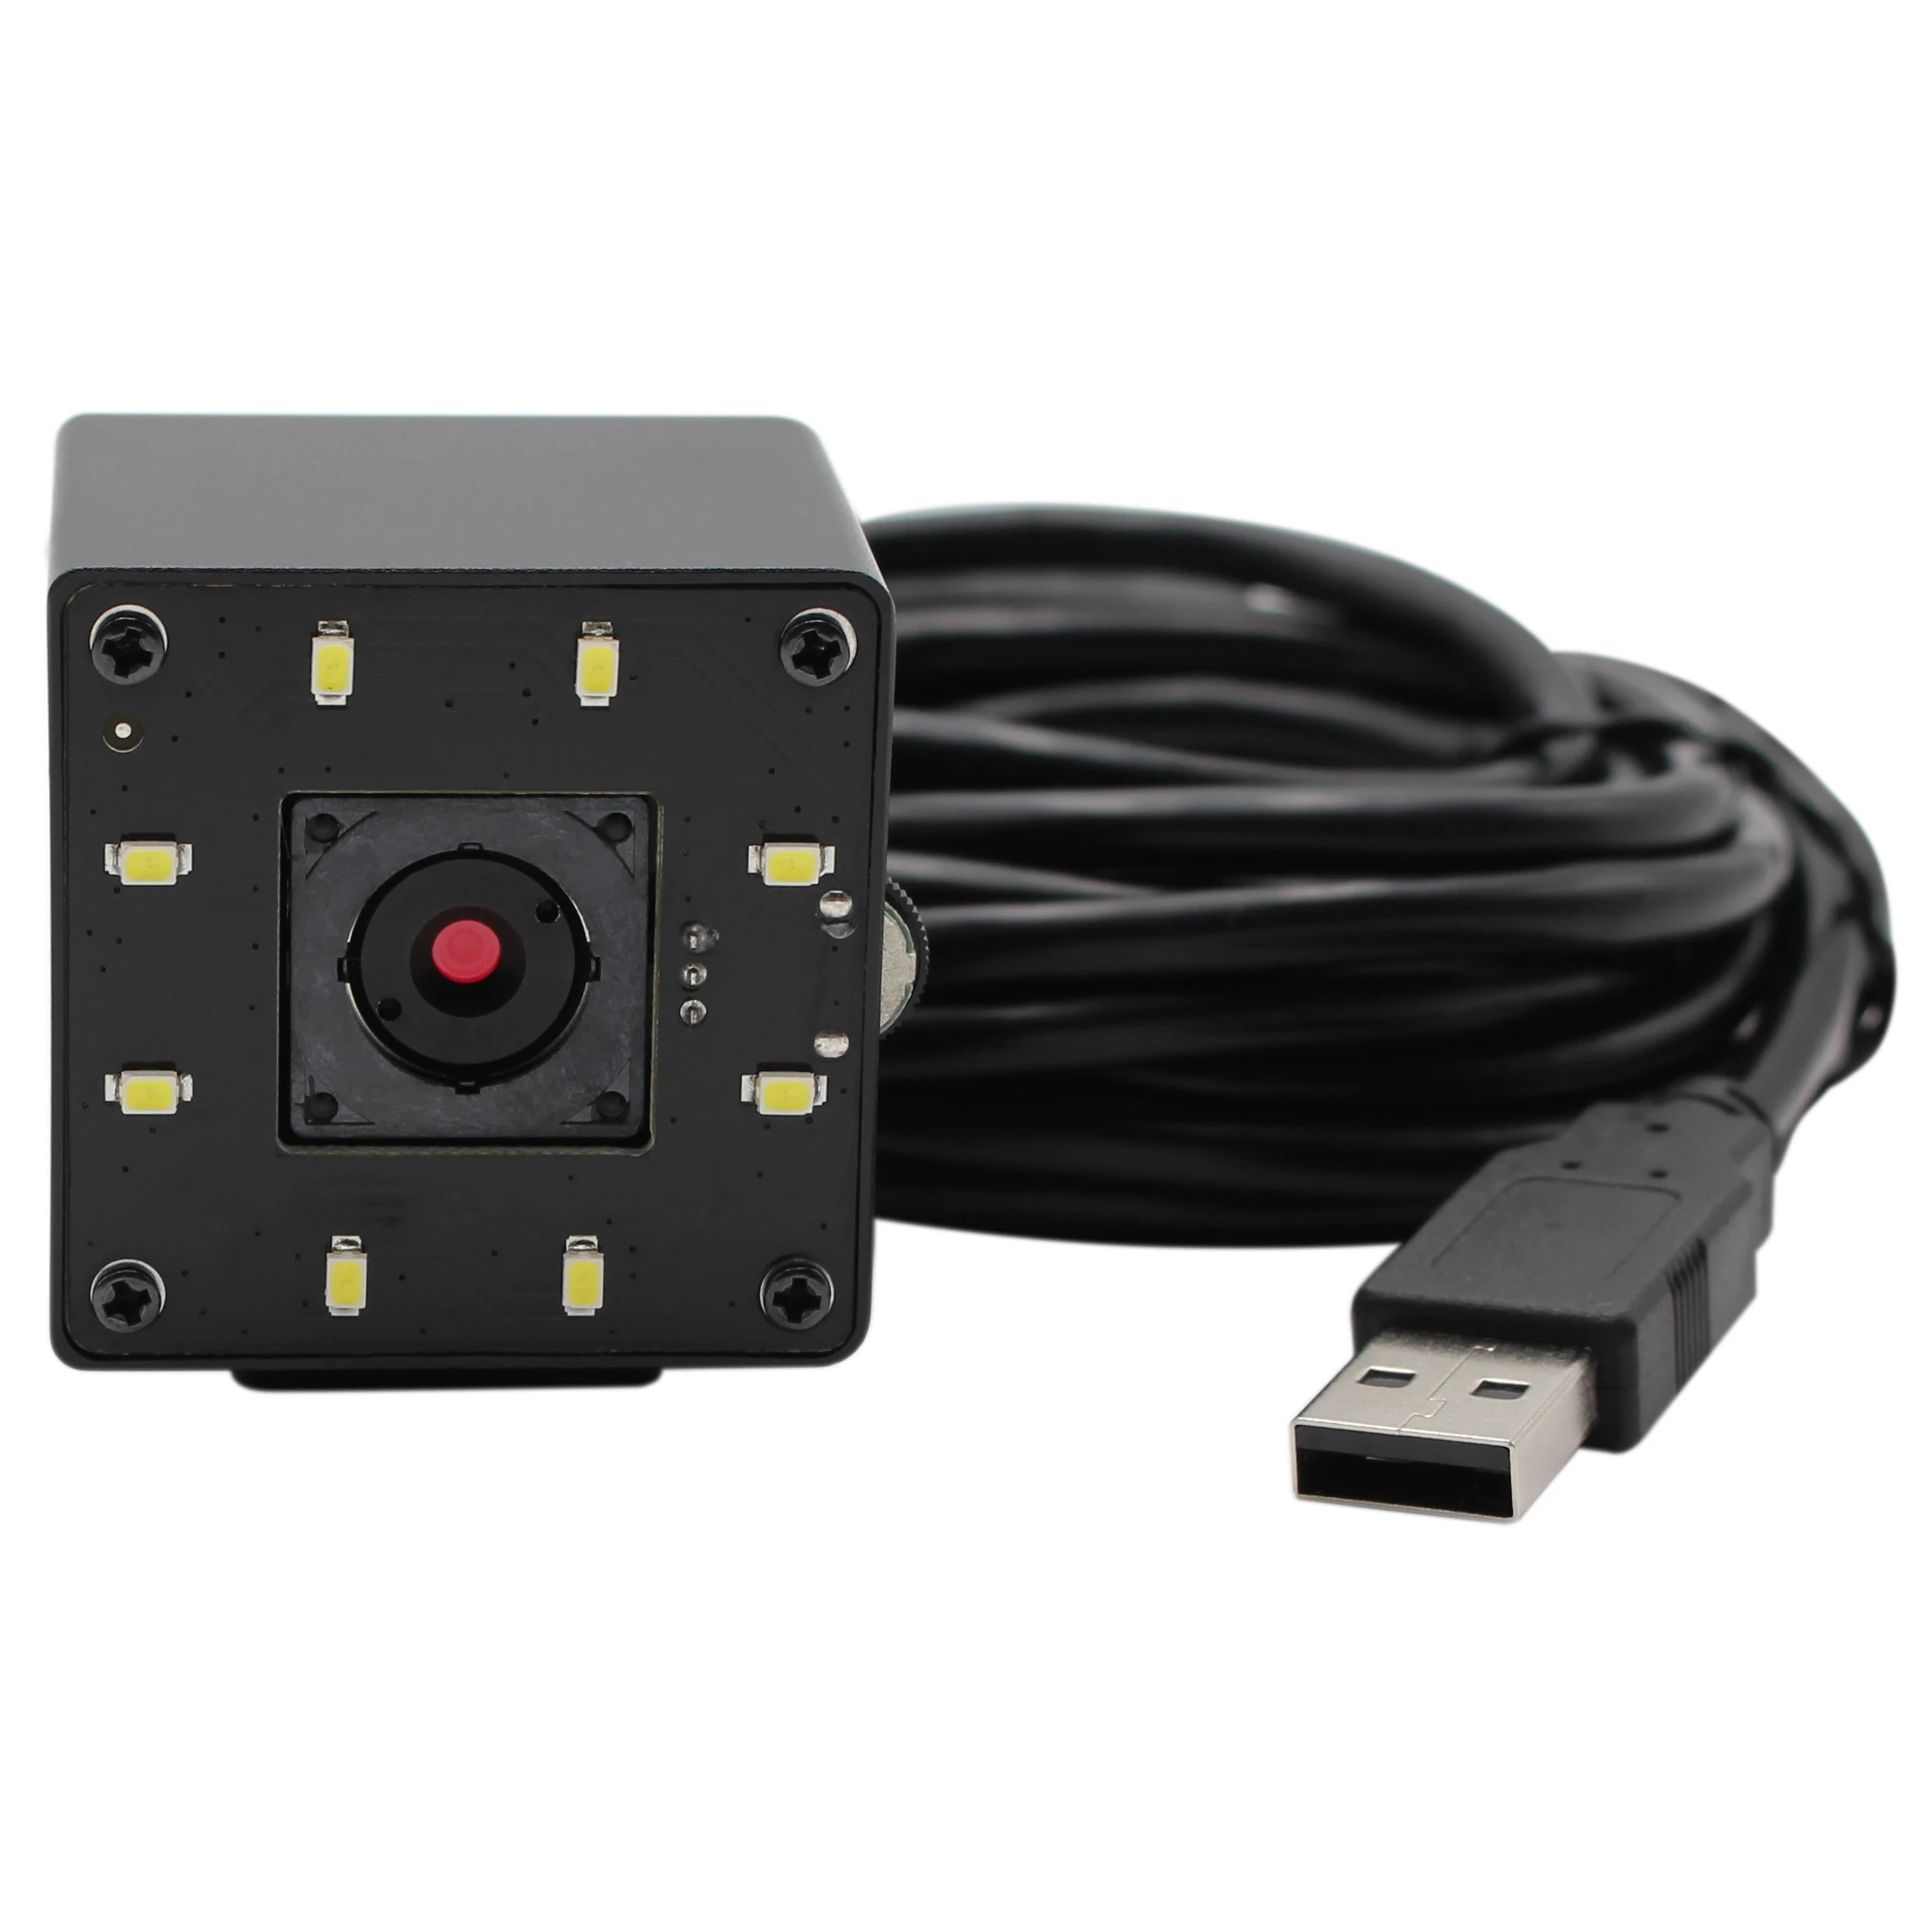 5 МП Высокое разрешение ПК веб-камера мини Автофокус USB камера с белыми